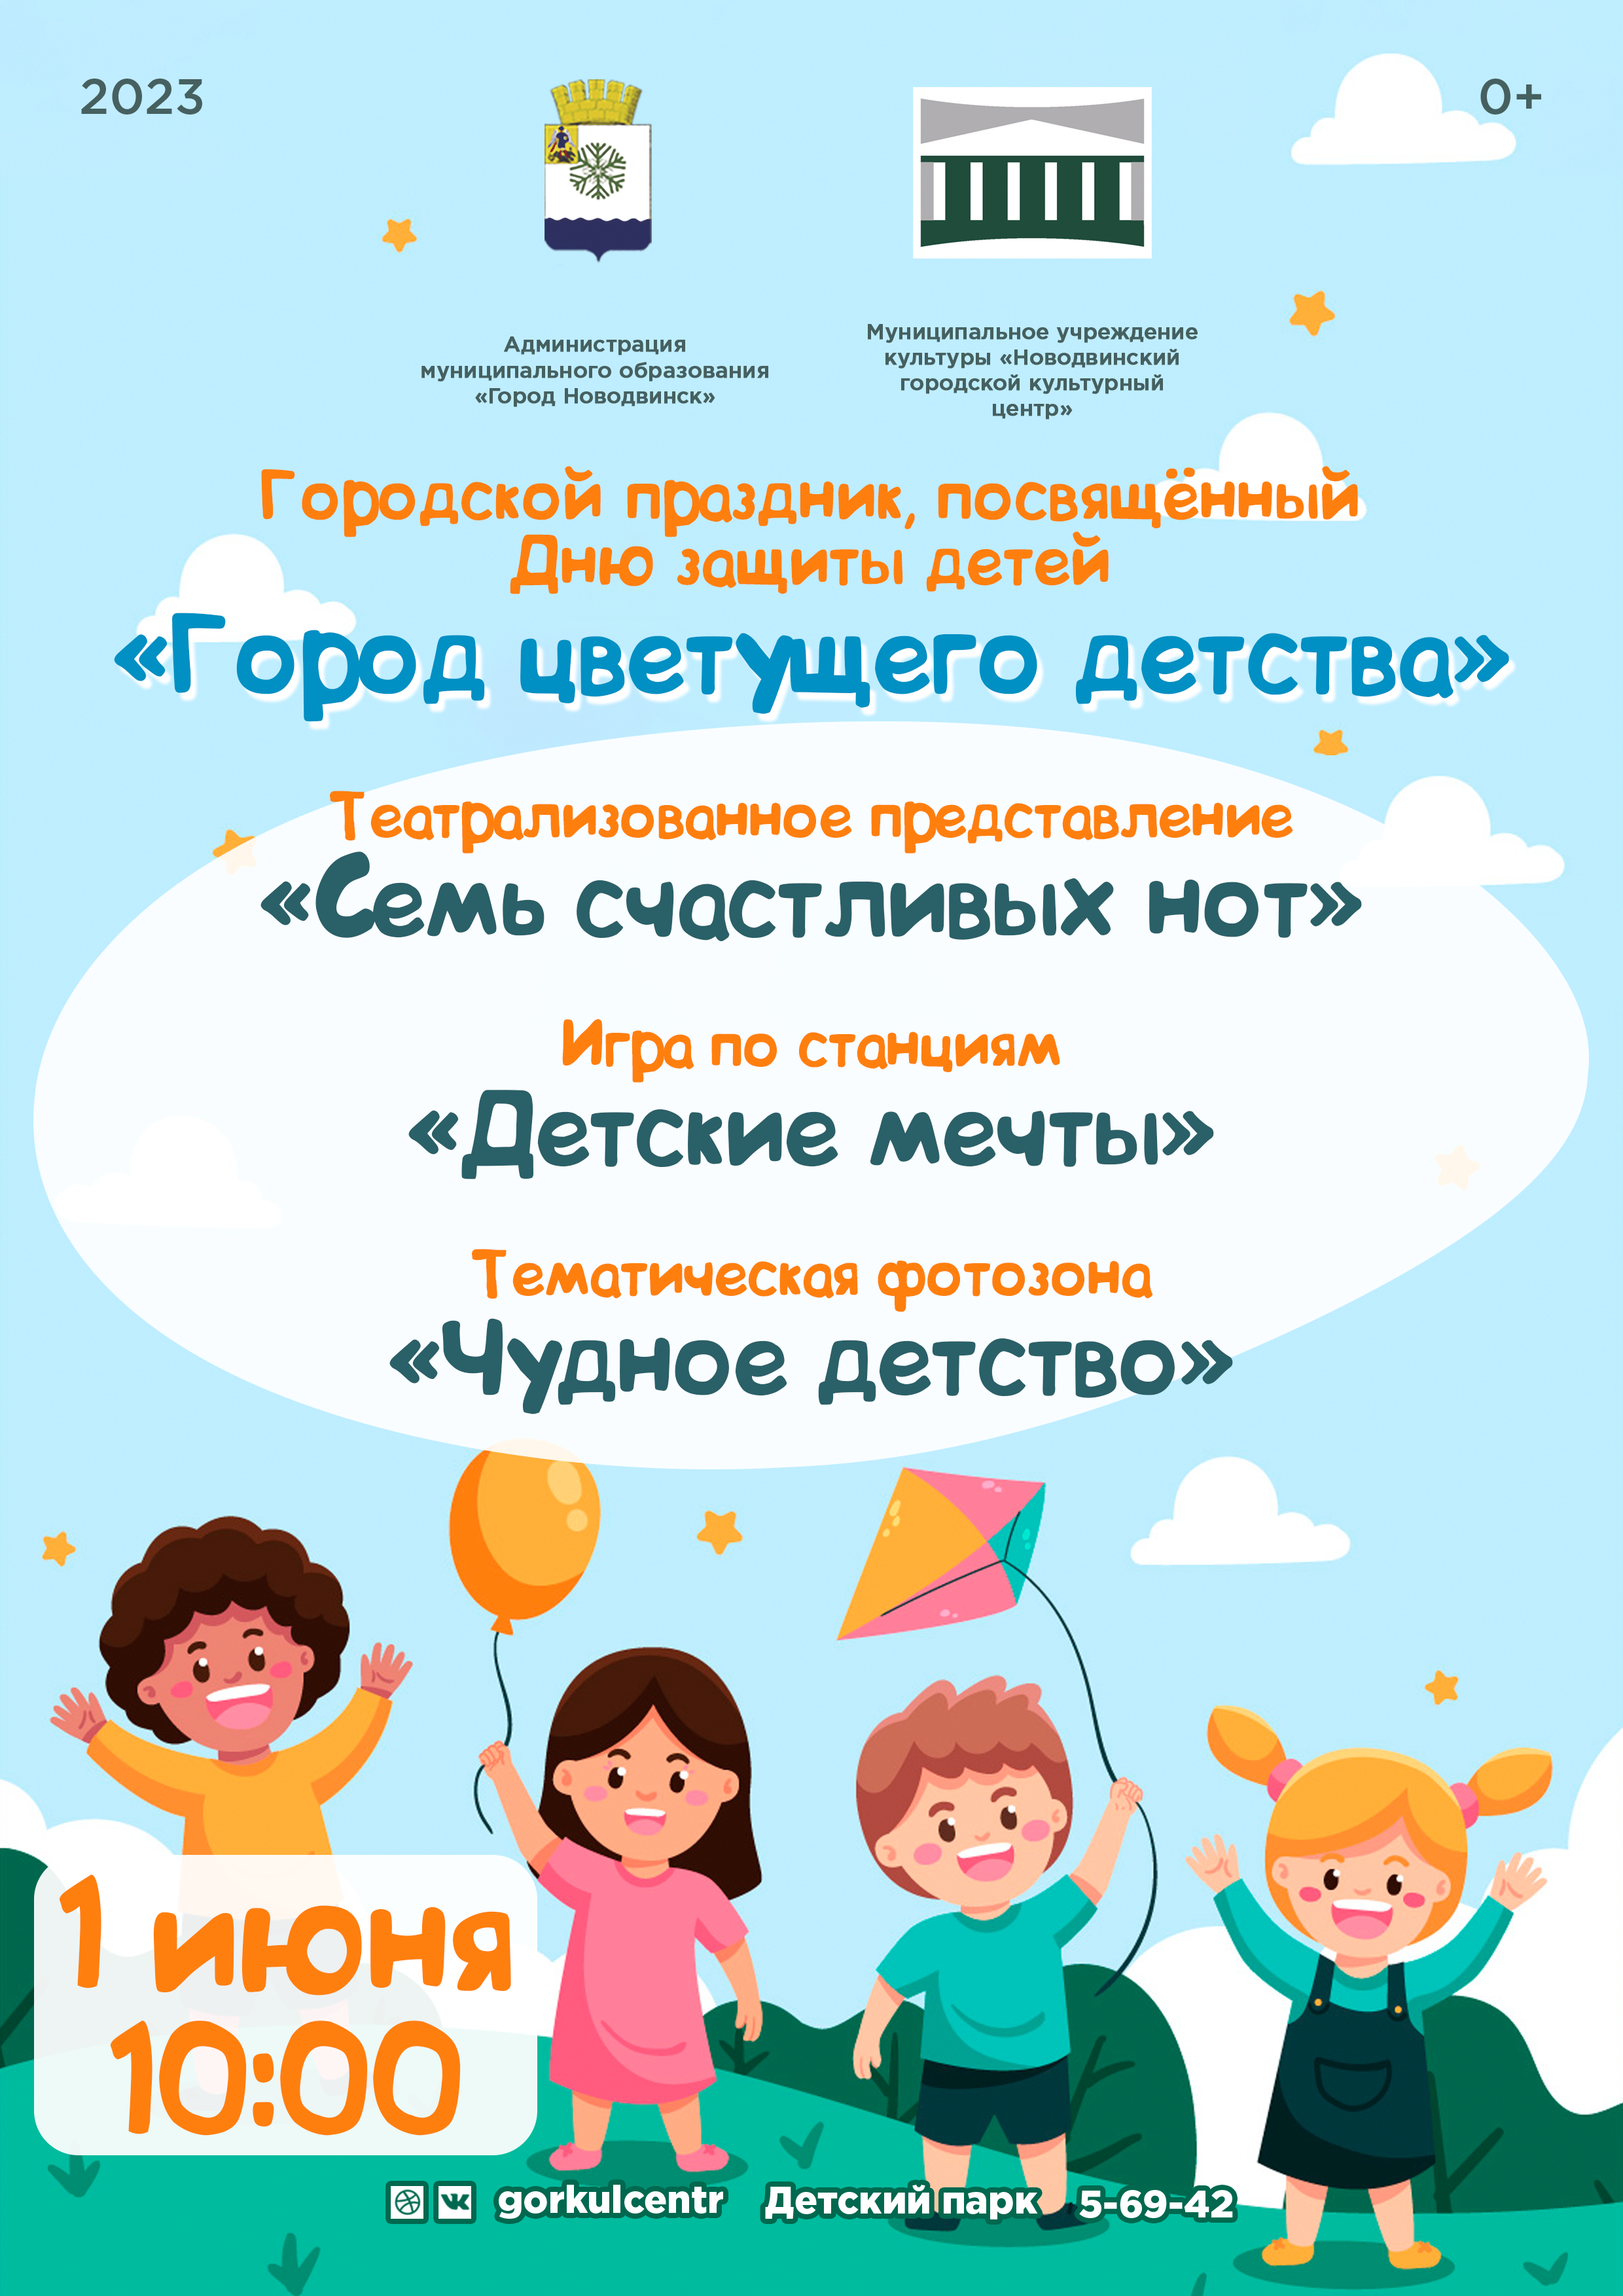 1 июня — Международный день защиты детей! В этот день мы хотим подарить вам незабываемый праздник, полный радости и веселья!